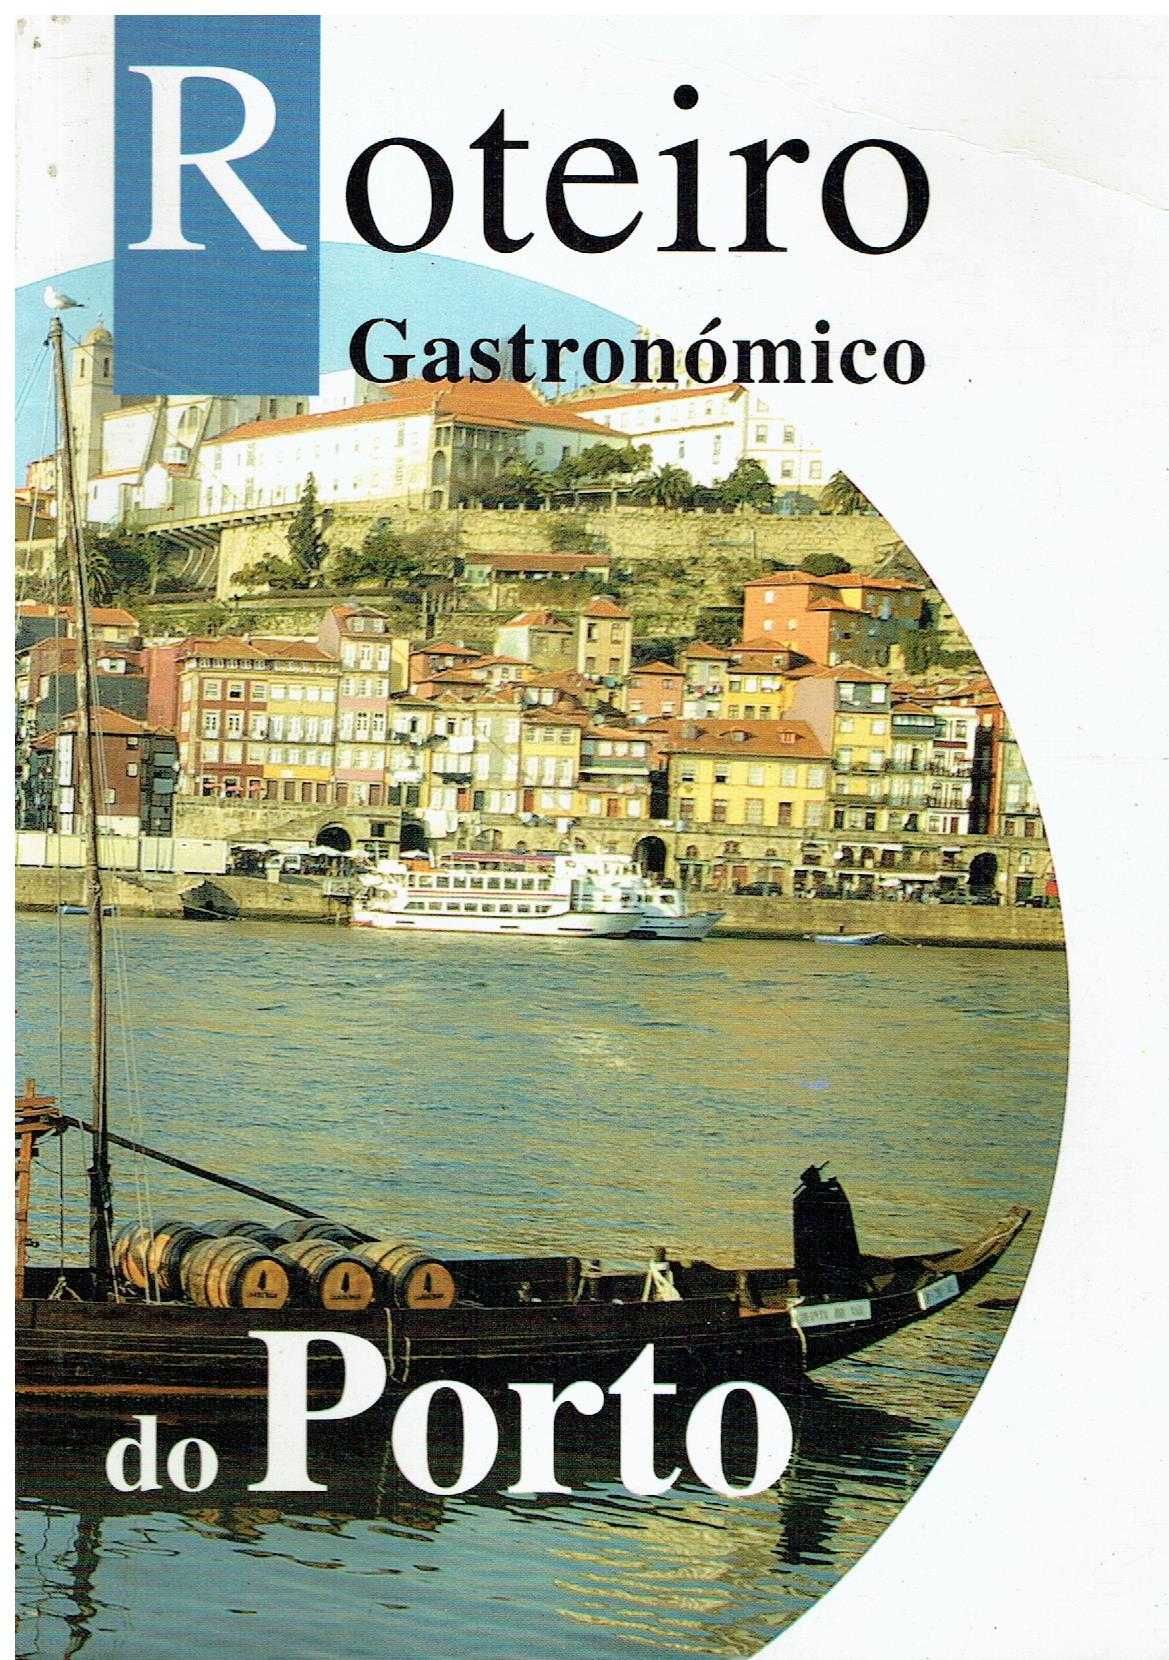 7331

Roteiro Gastronómico do Porto